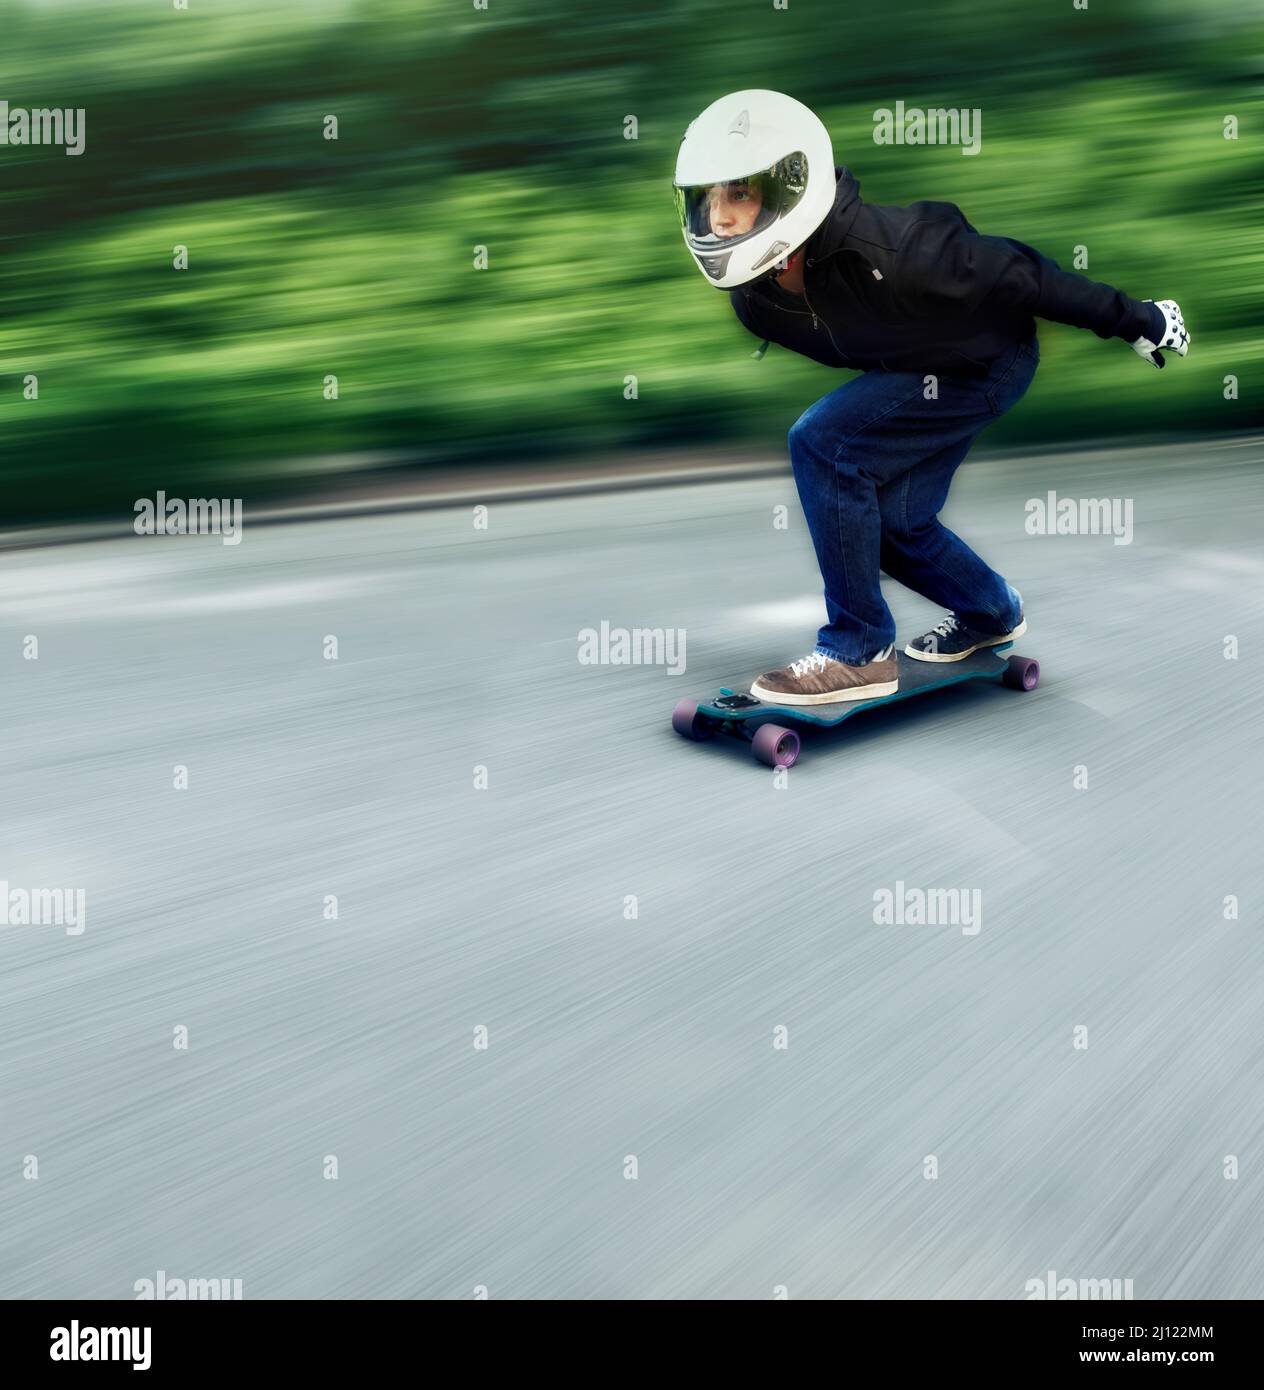 Ravie par la vitesse. Photo d'un homme qui fait du skateboard sur une voie à grande vitesse sur son plateau. Banque D'Images